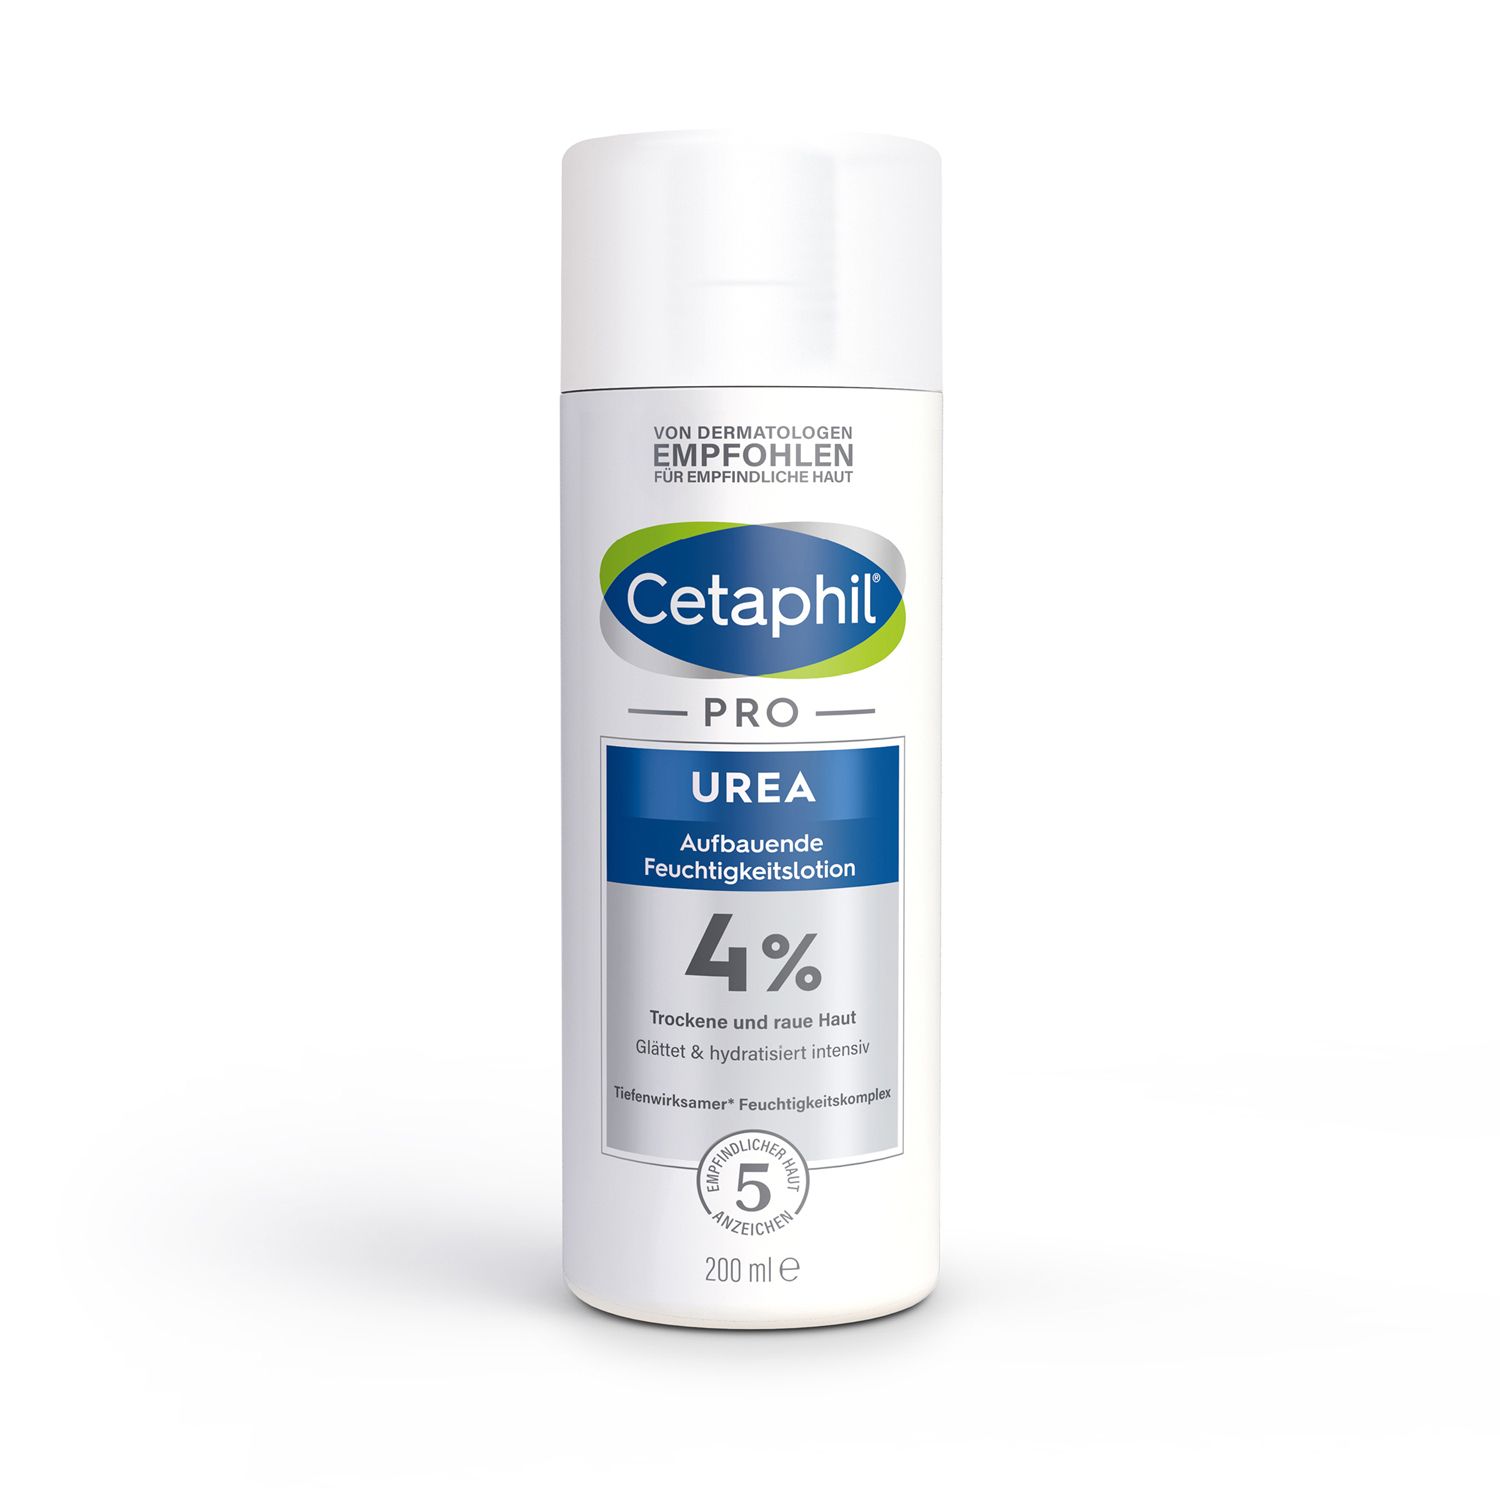 Cetaphil PRO Urea 4% Aufbauende Feuchtigkeitslotion für trockene Haut